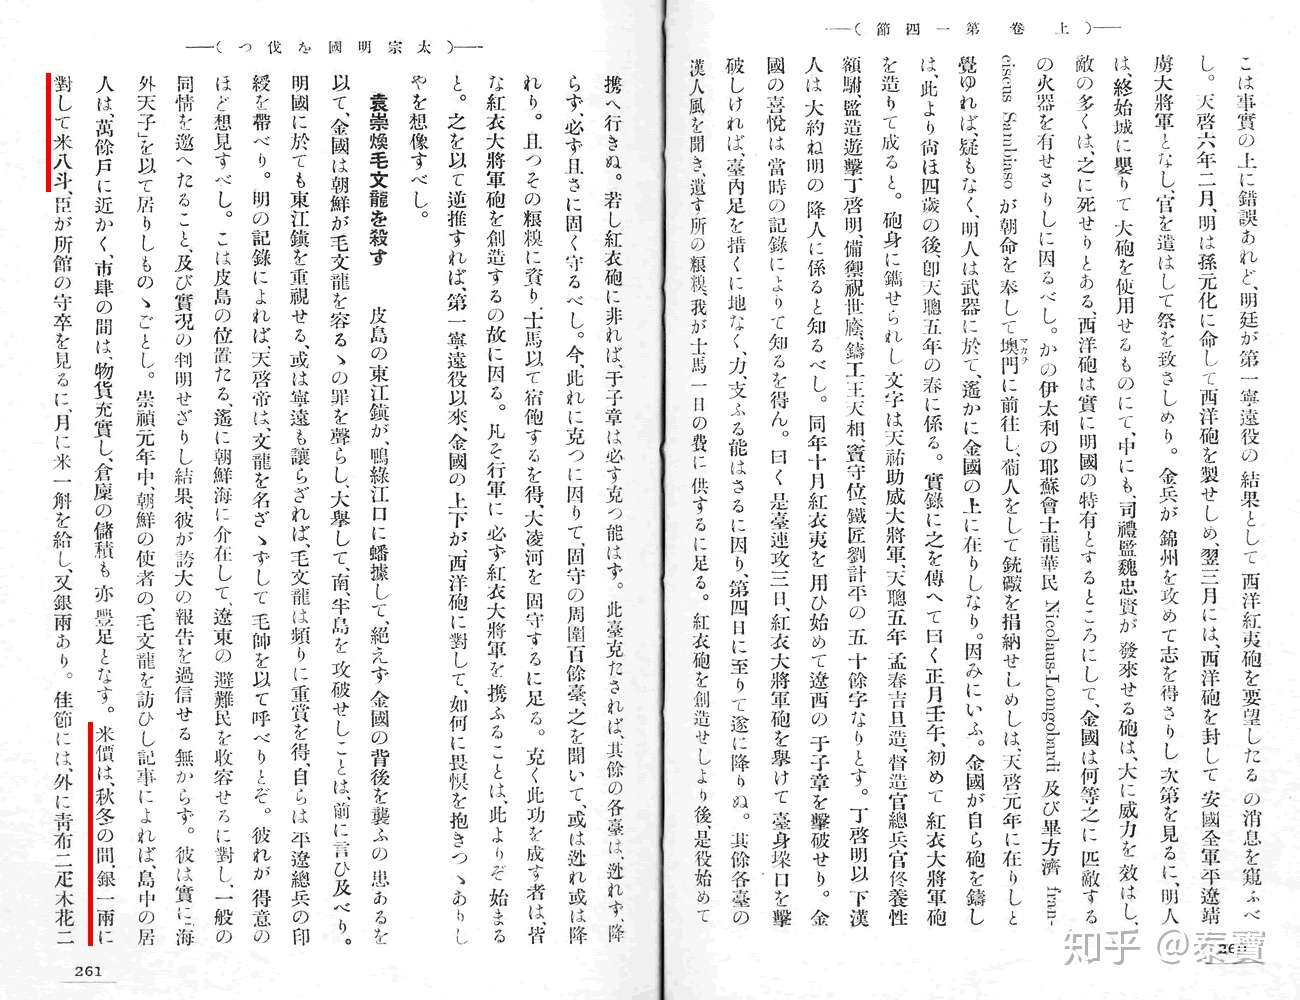 明の五彩 (中国の陶磁９) 1996/4/1 矢島 律子 (著) ハードカバー製本 